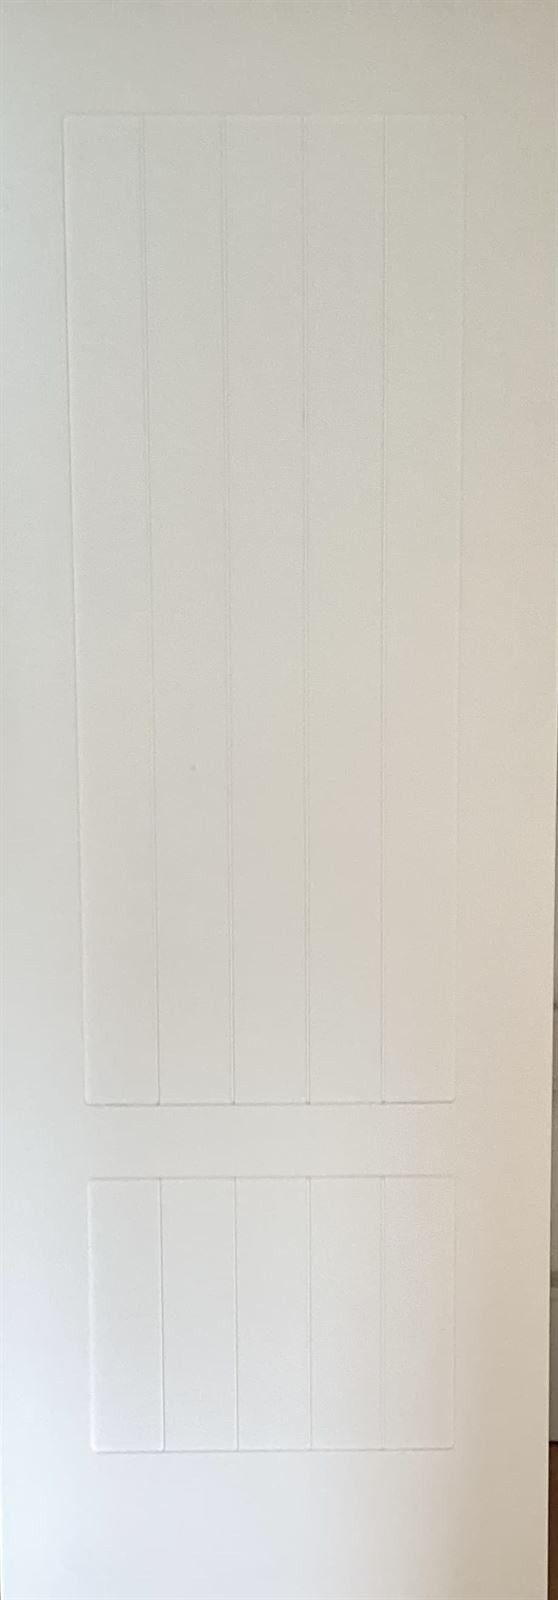 Puerta lacada blanca modelo 8 - Imagen 1